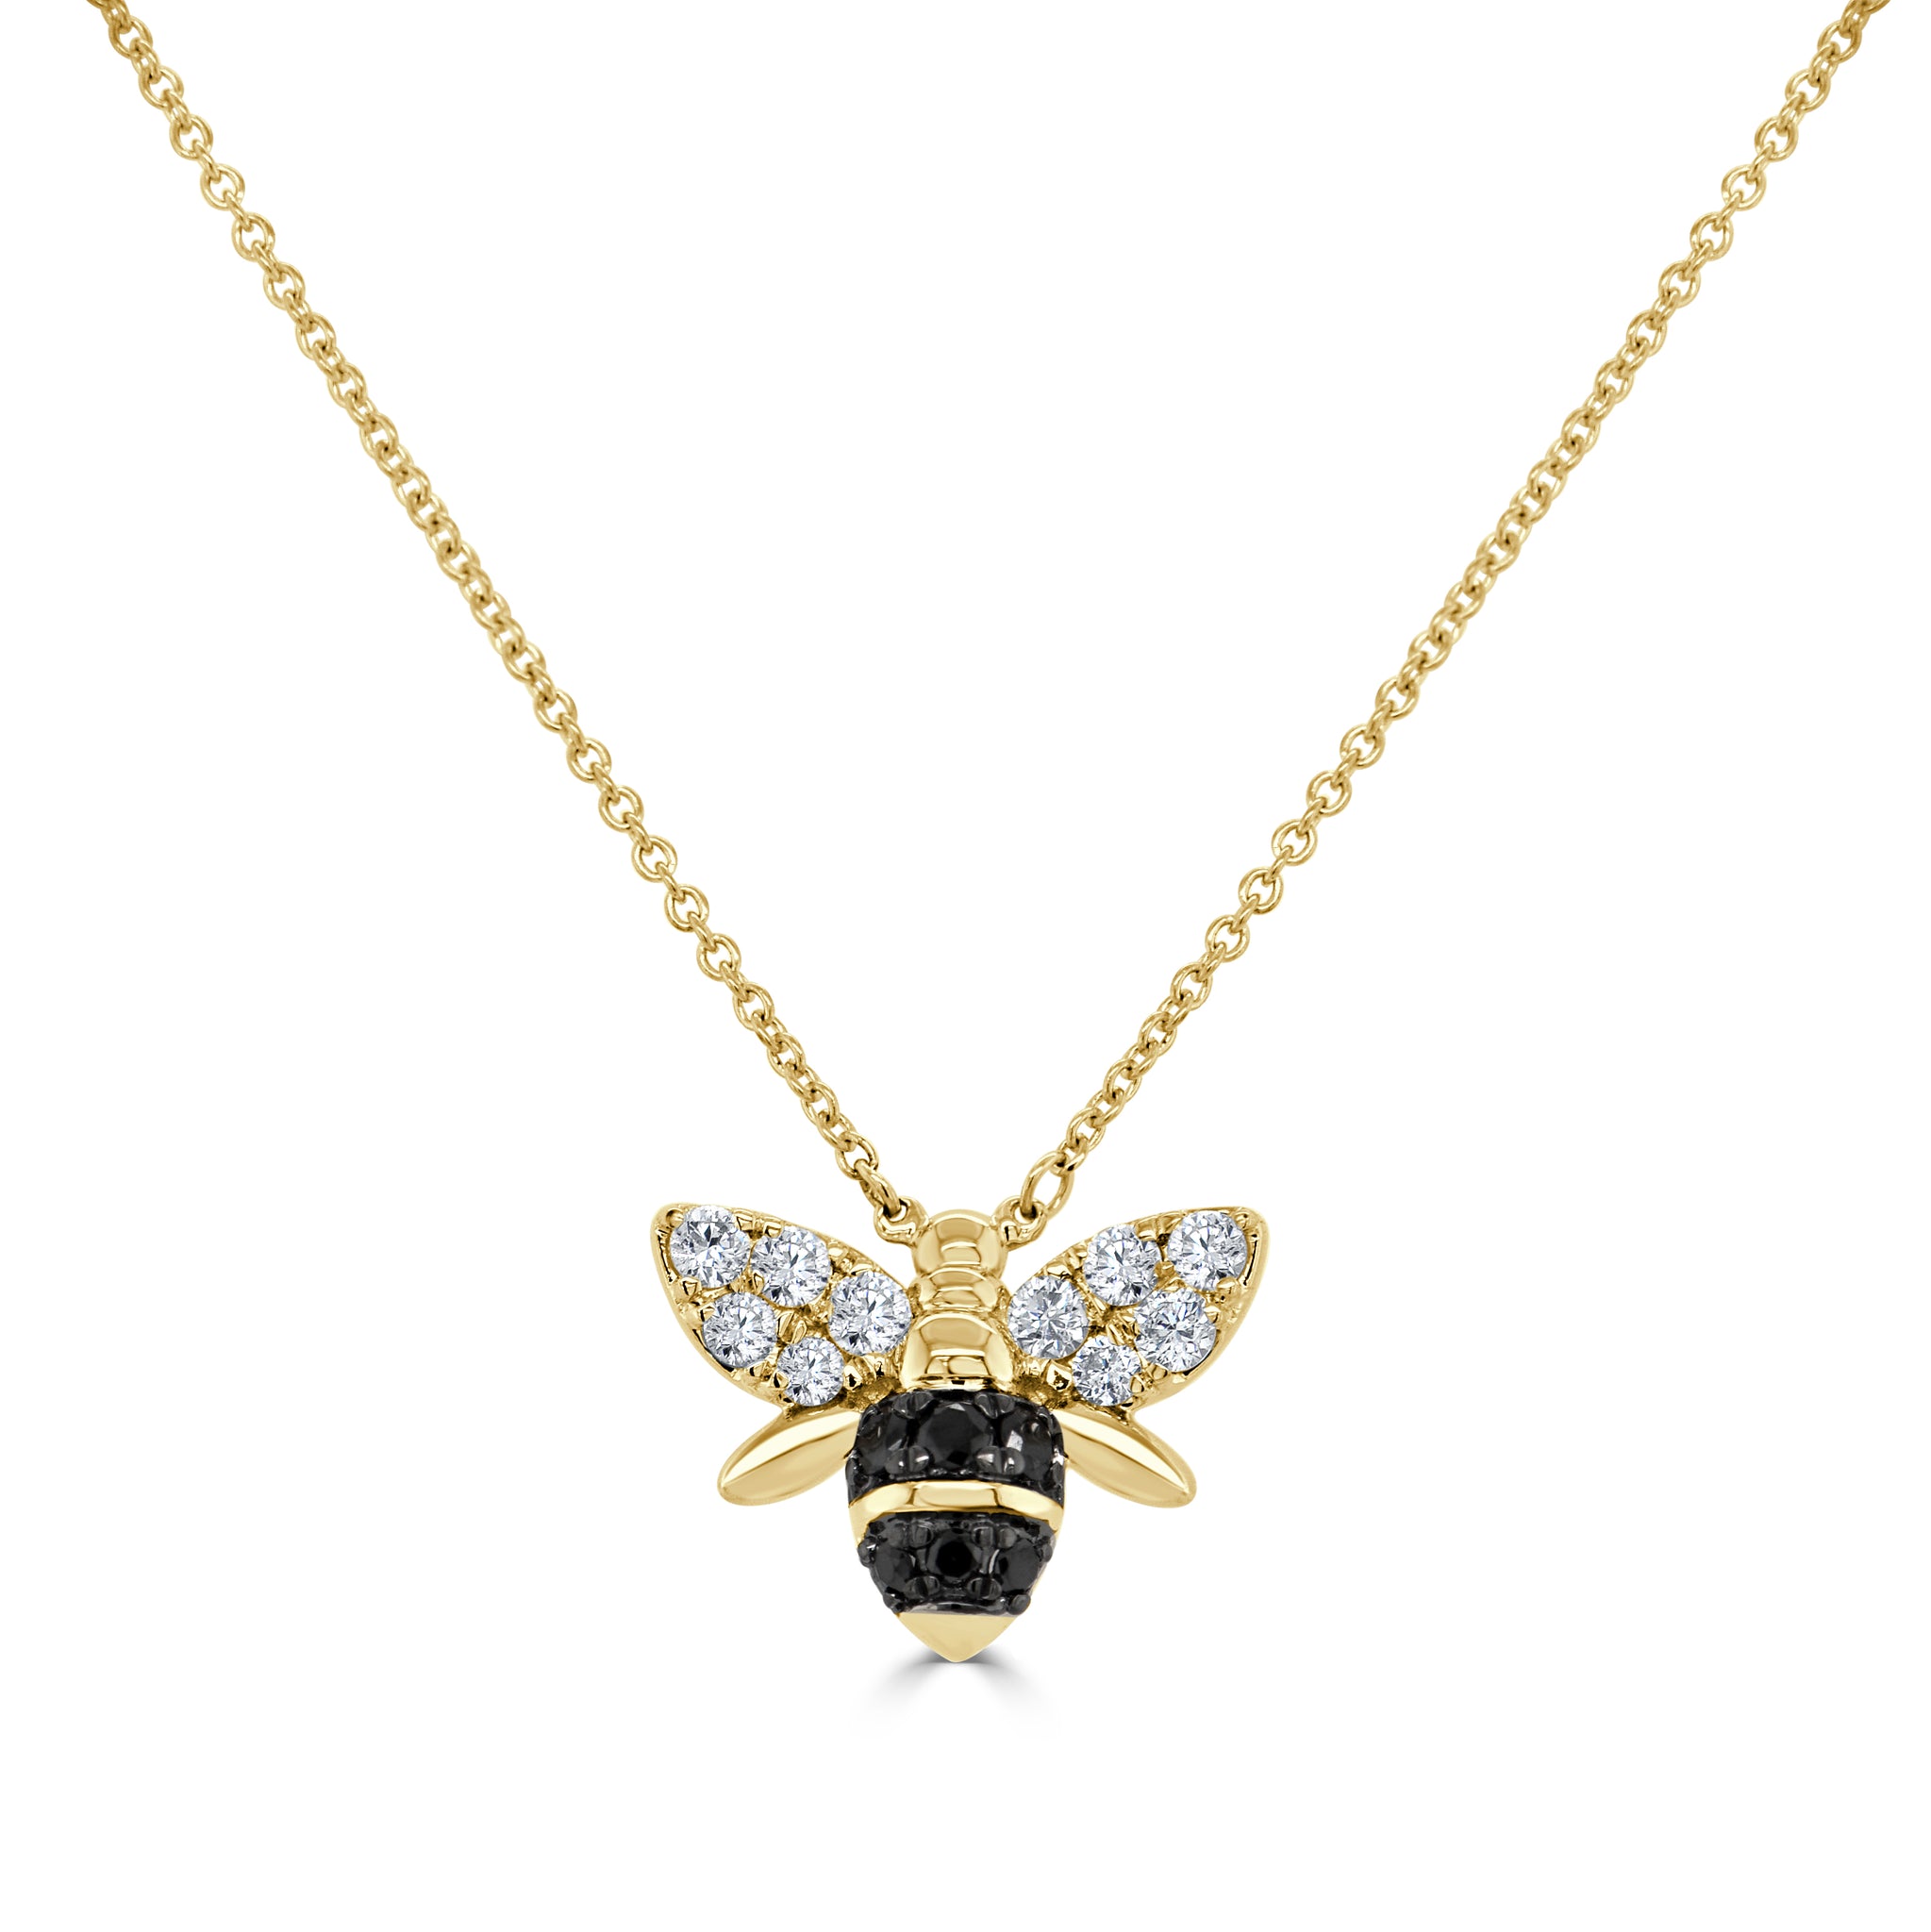 Teeny Tiny Bumblebee Necklace – Philippa Roberts